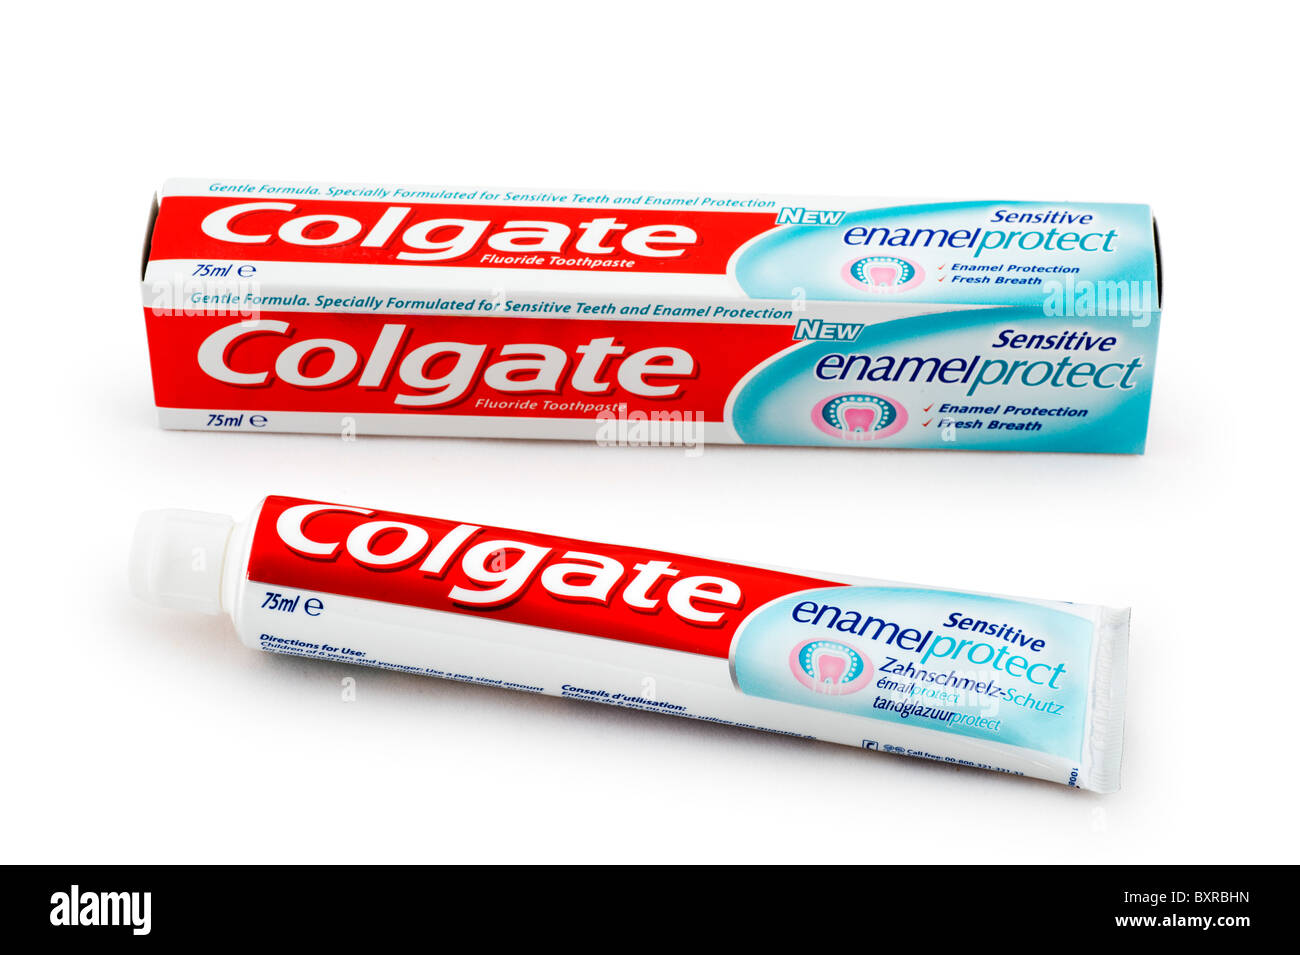 Tubo de Colgate esmalte sensible proteger dentífrico, UK Foto de stock